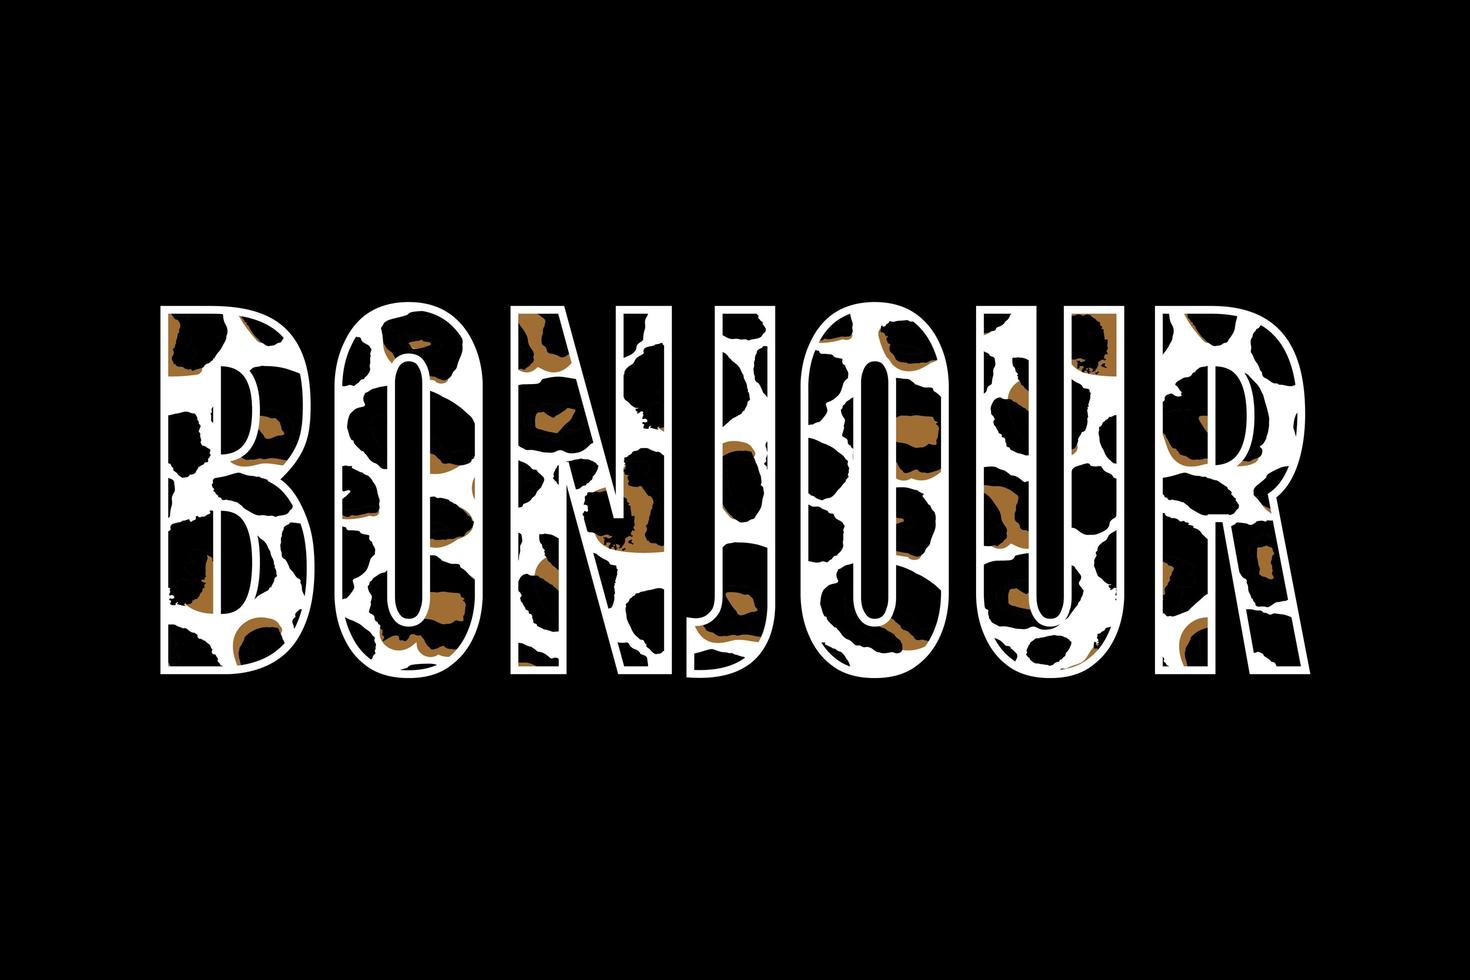 dekorativer Bonjour-Hallo-Slogan-Text mit Leopardenfell-Hintergrund vektor